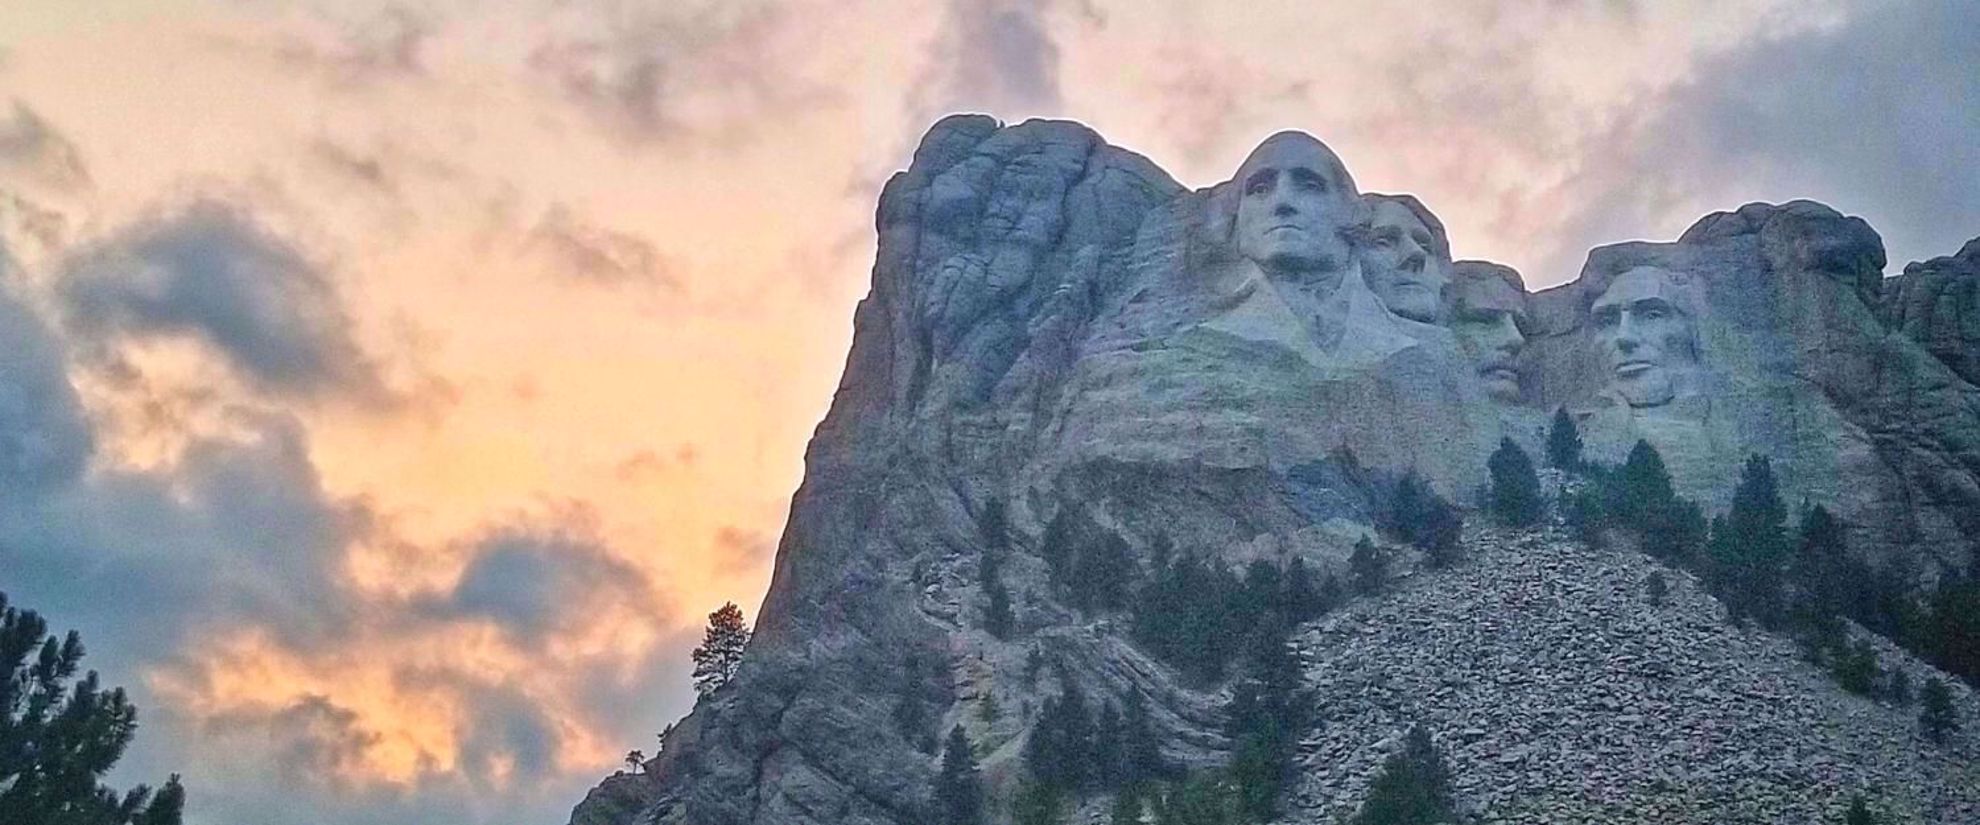 visit Mount Rushmore at sunset